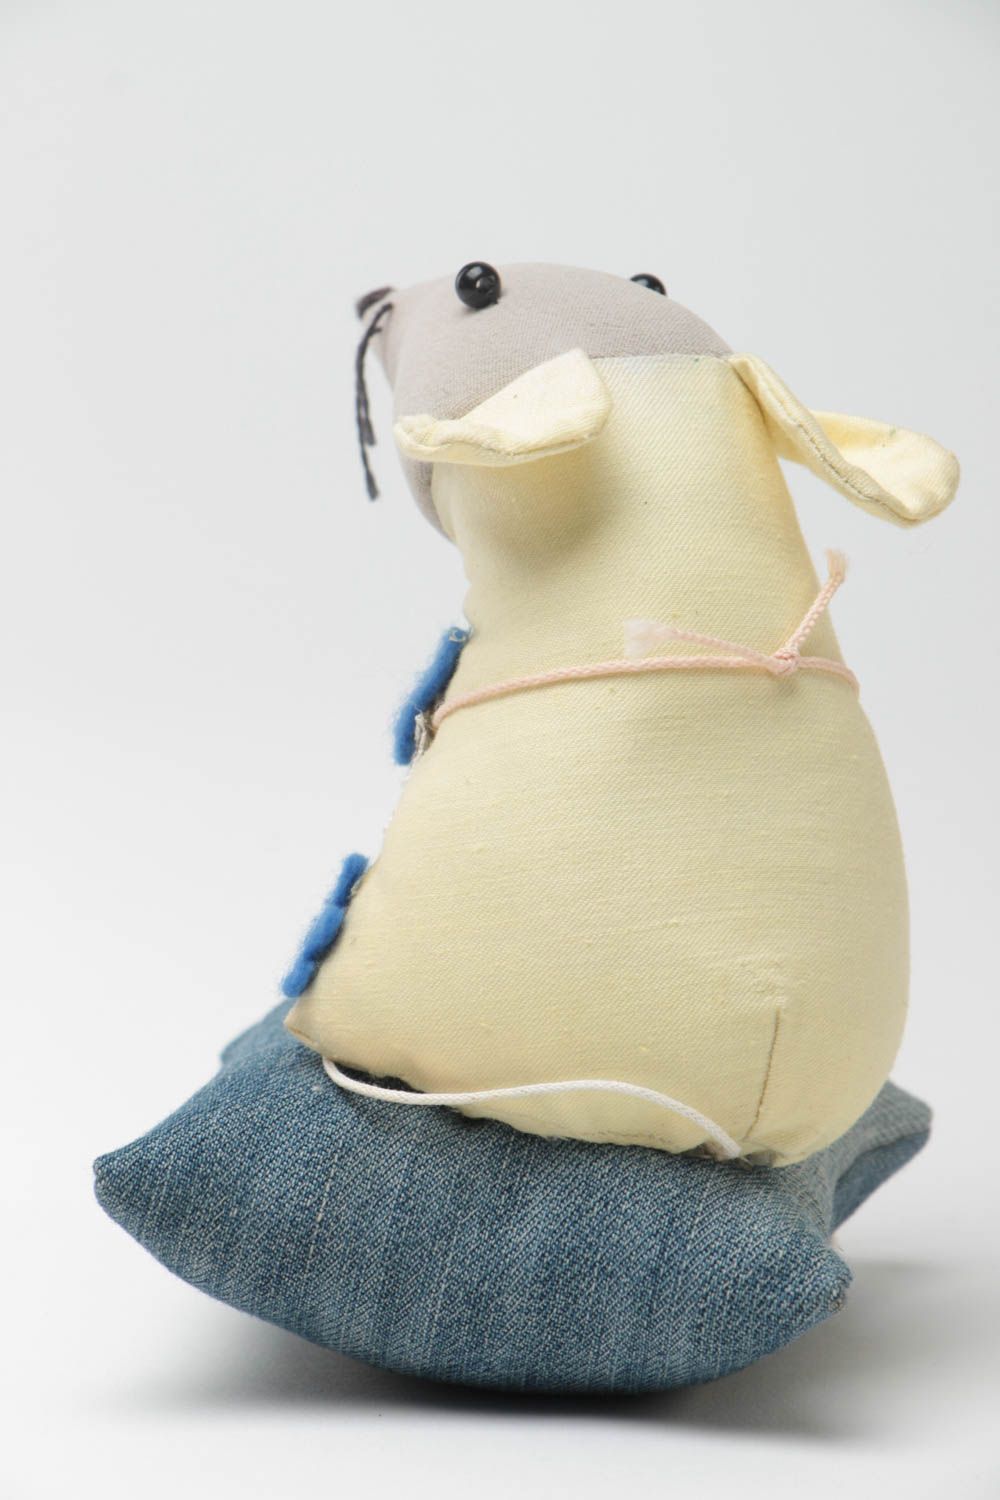 Peluche rat sur oreiller en tissus faite main originale décorative pour enfant photo 4